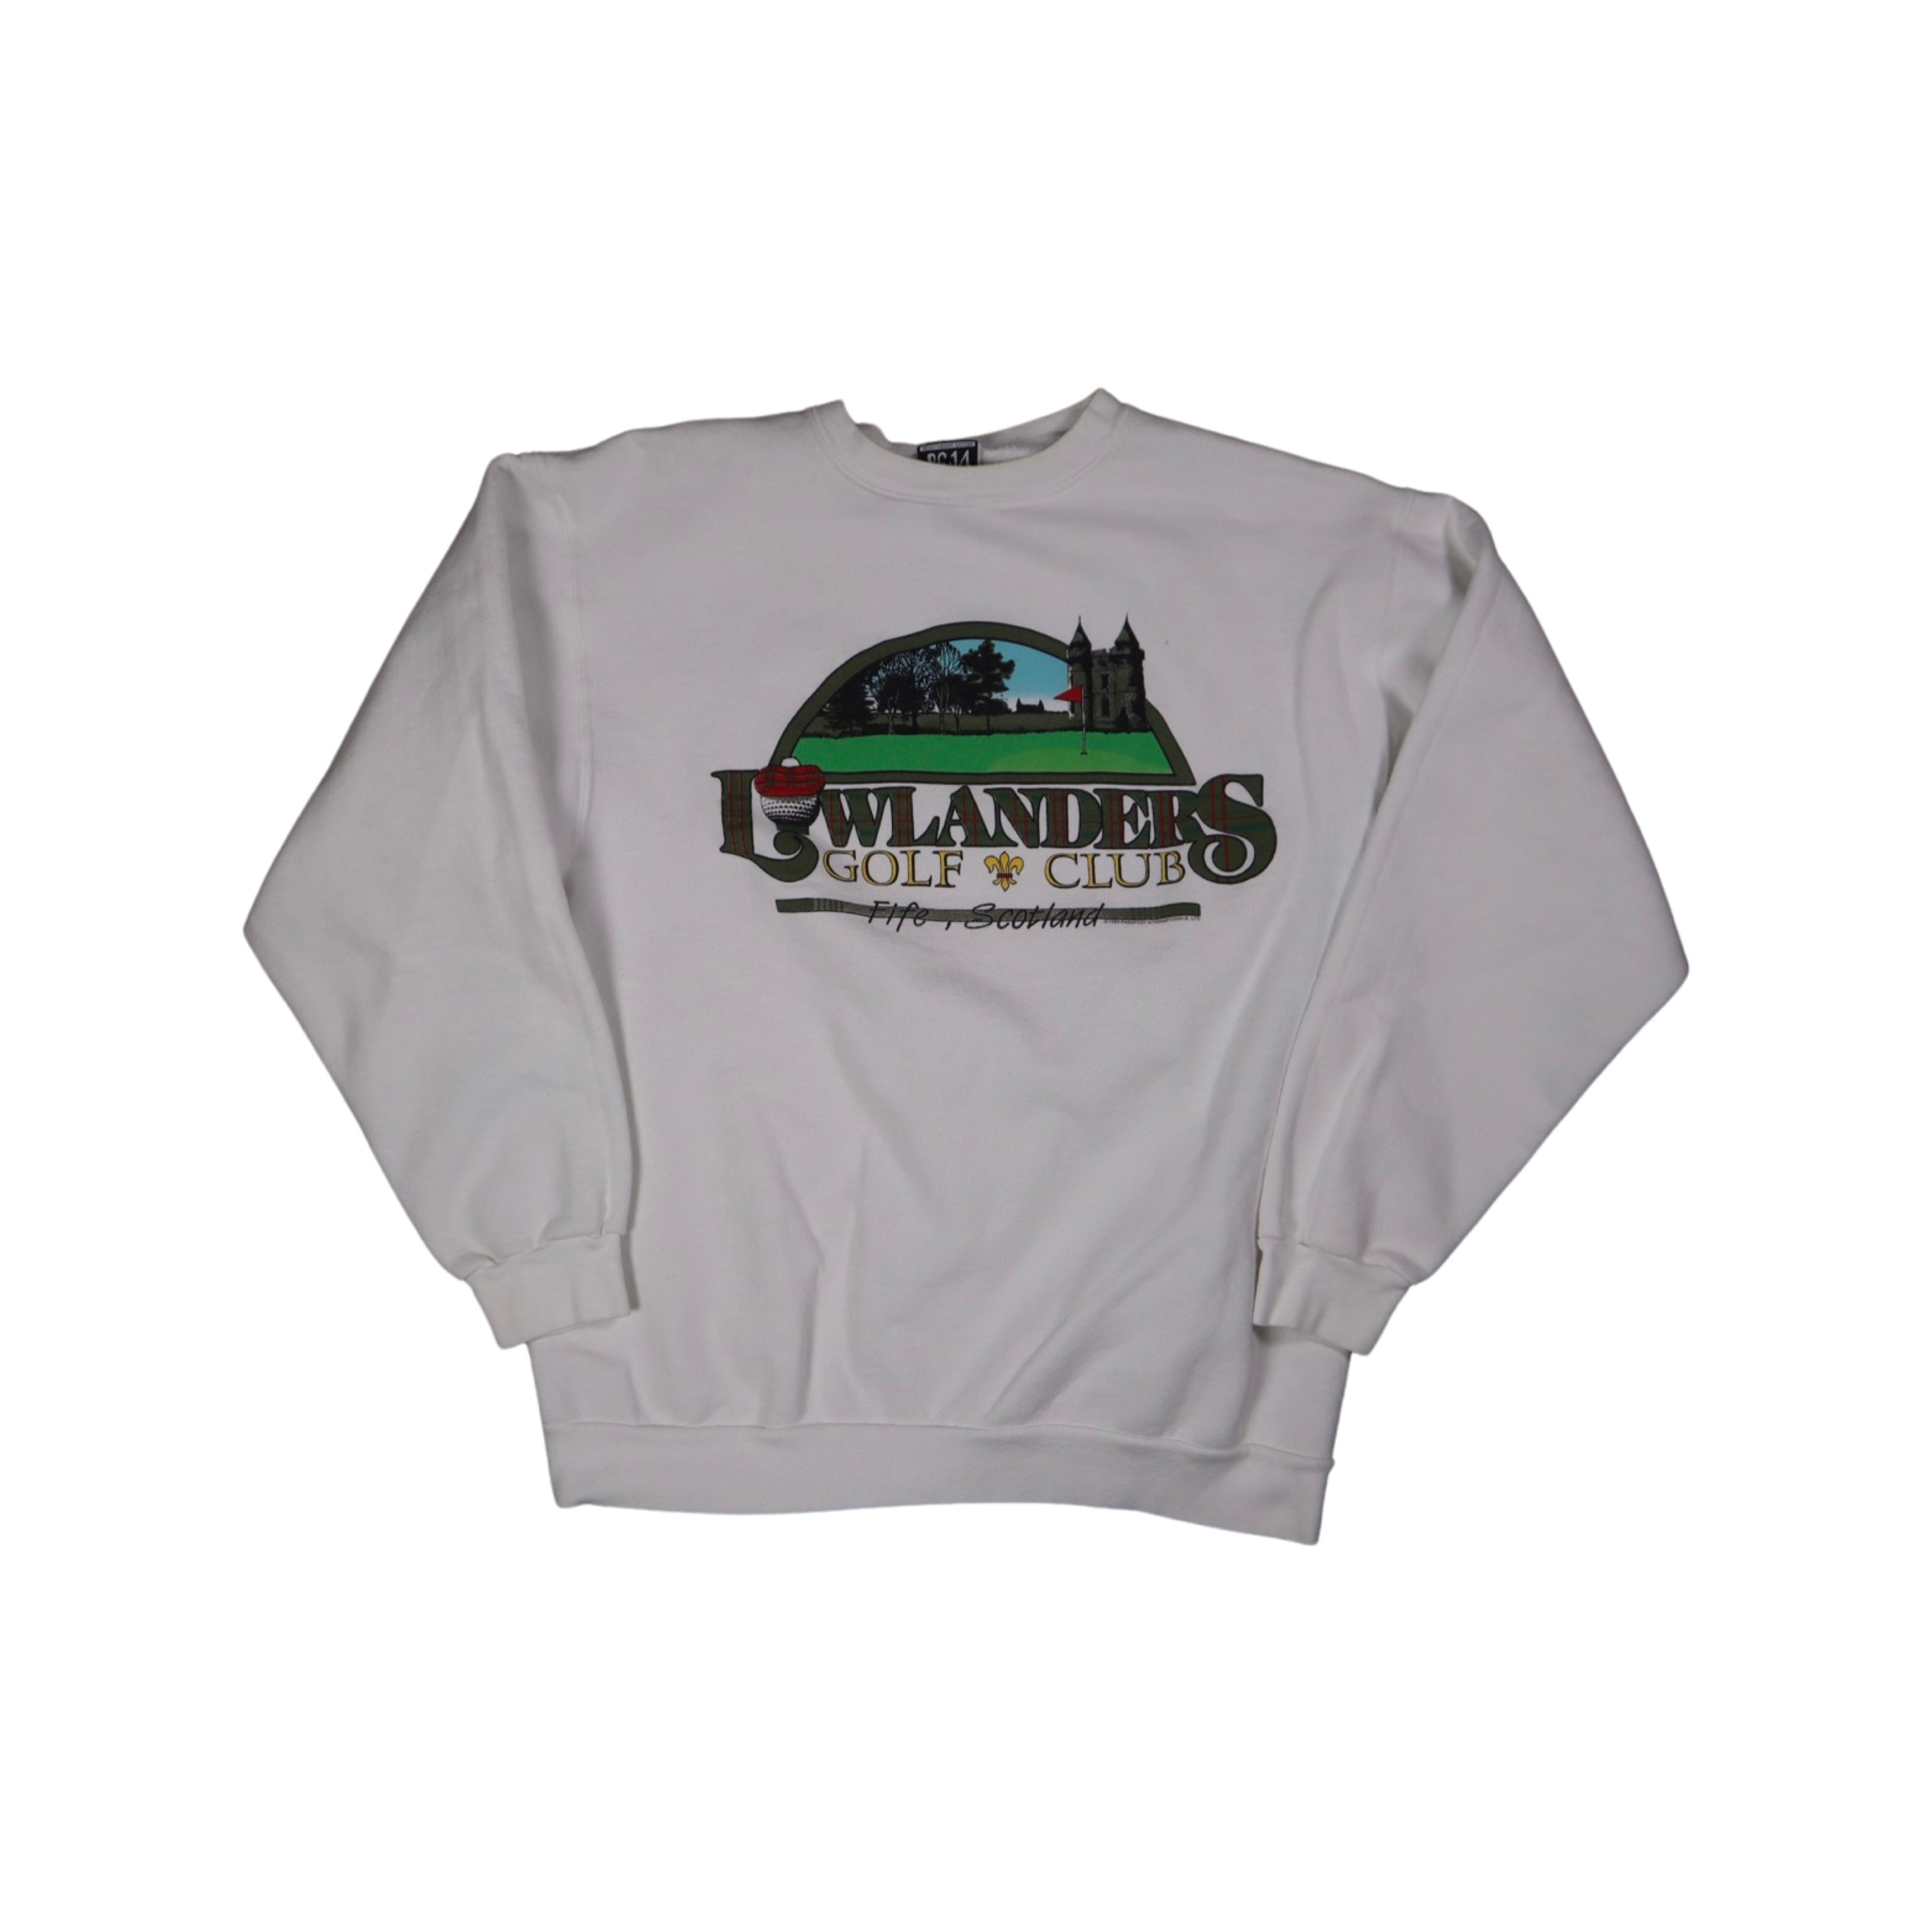 Lowlanders Scotland Golf Club 90s Sweater (XL)